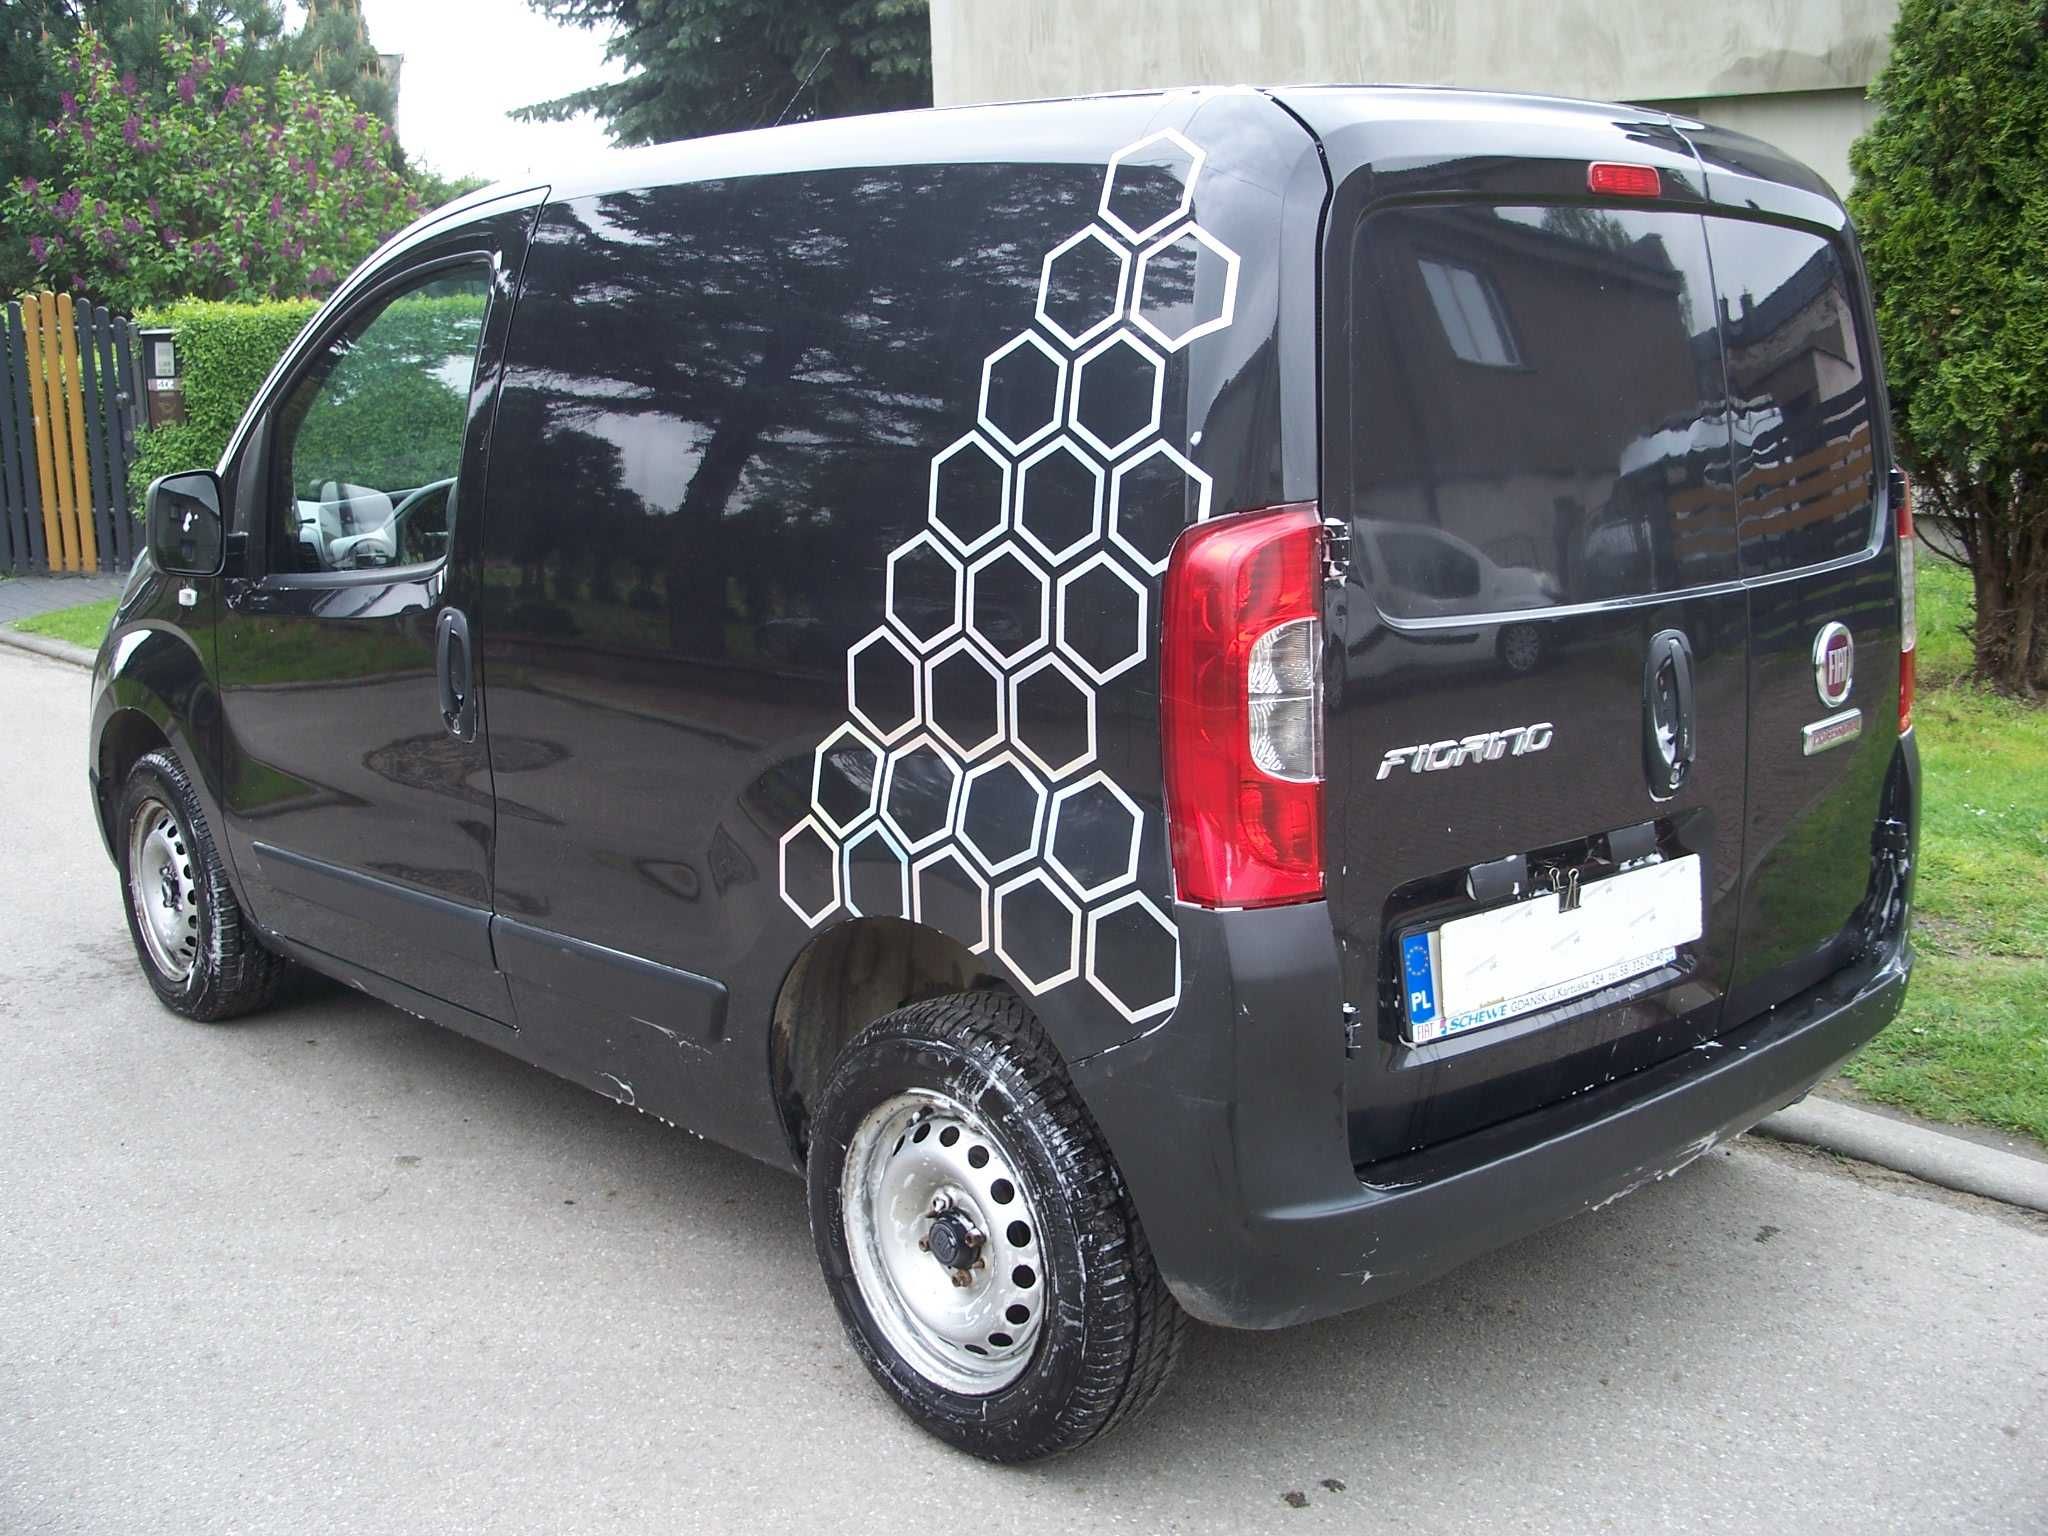 Fiat fiorino 2017/18 1.4 GAZ LPG! KLIMA Tylko 160 tys. km! NETTO 22500